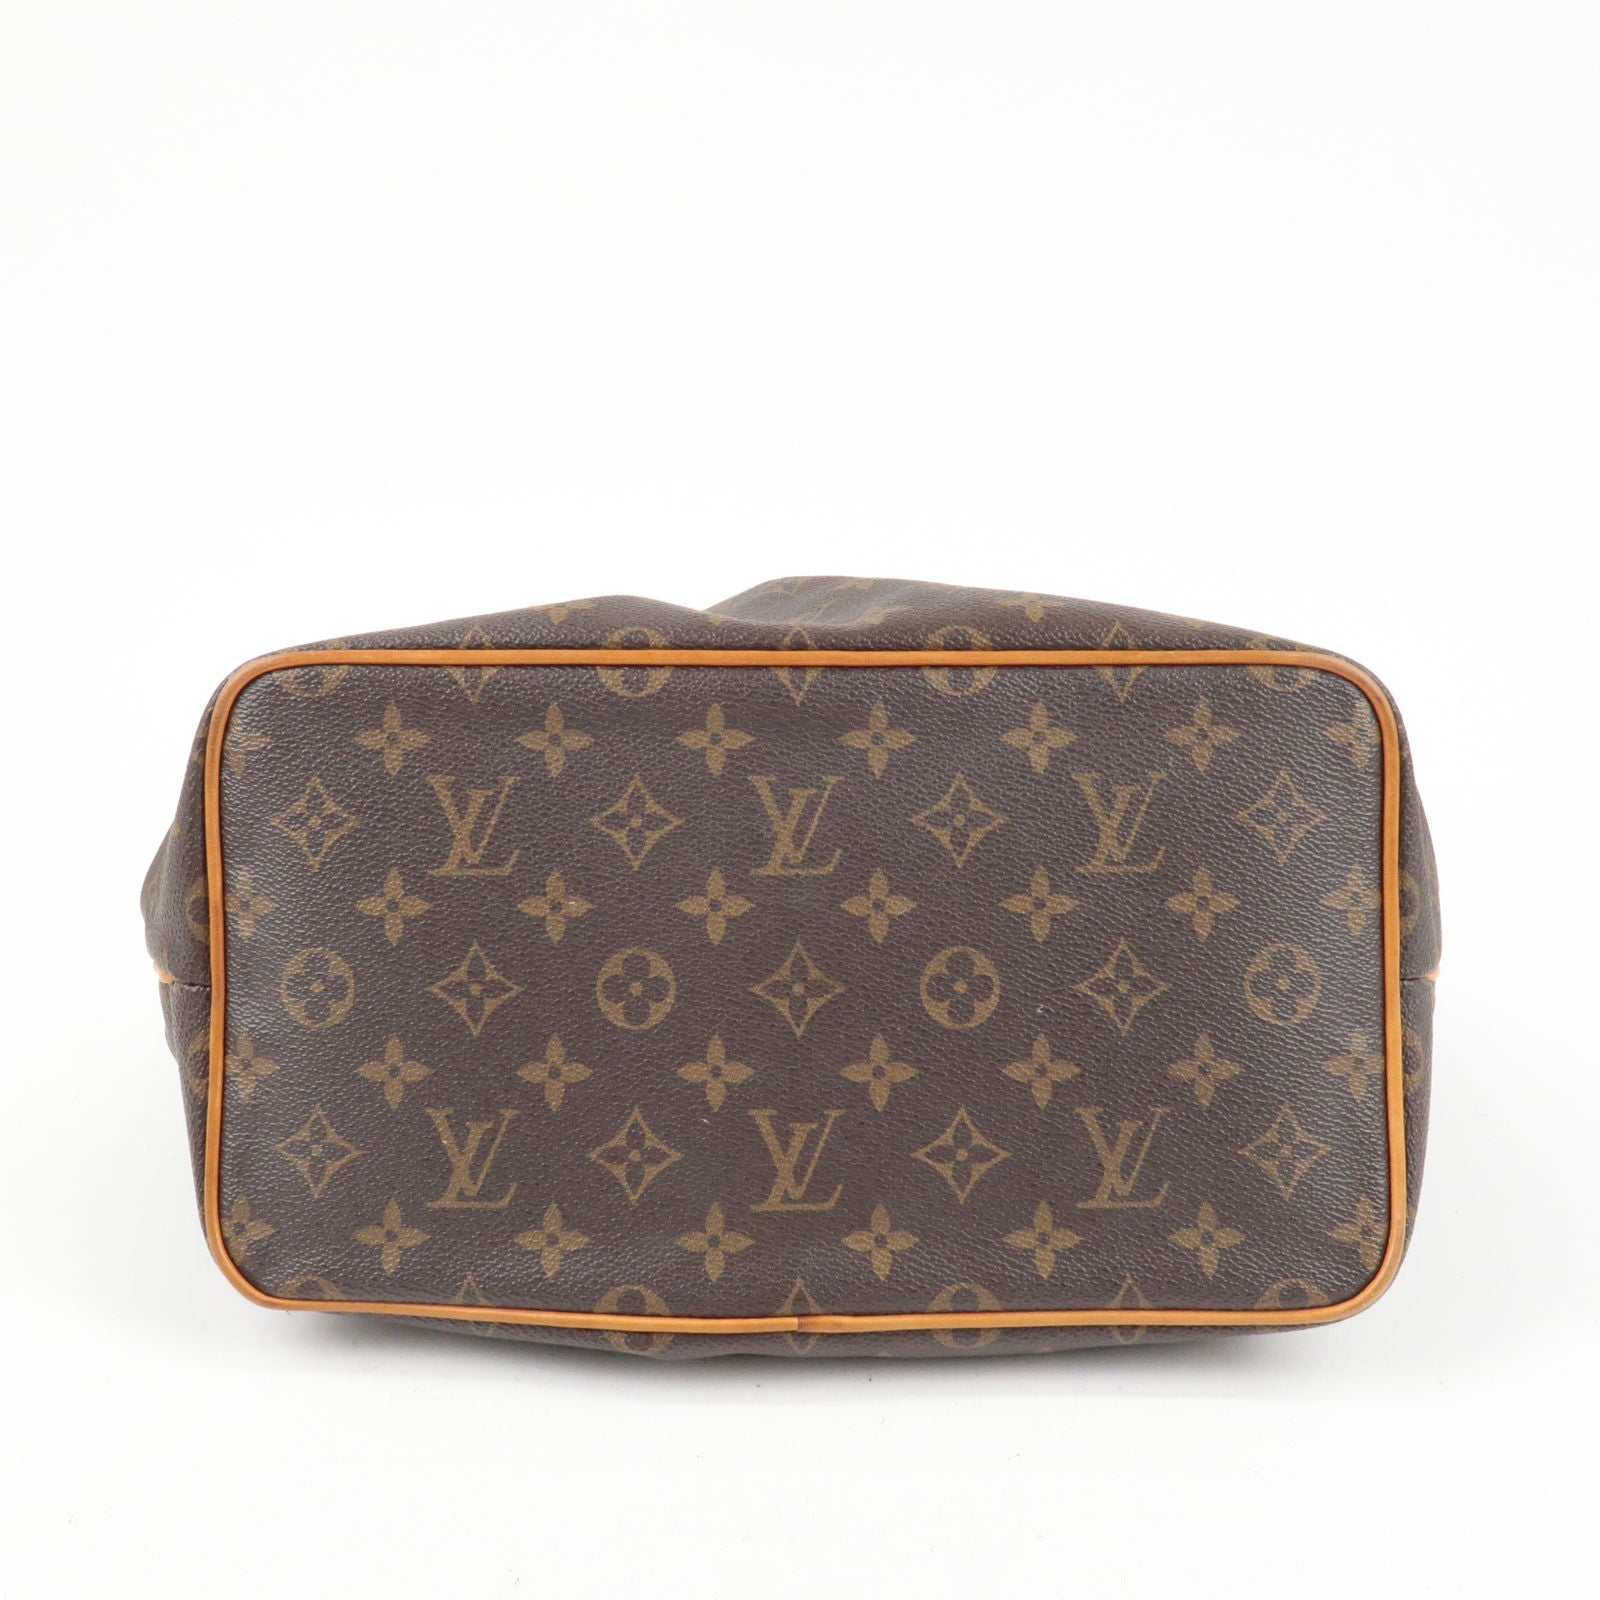 Secondhandbags I Louis Vuitton model name explained! Part 2